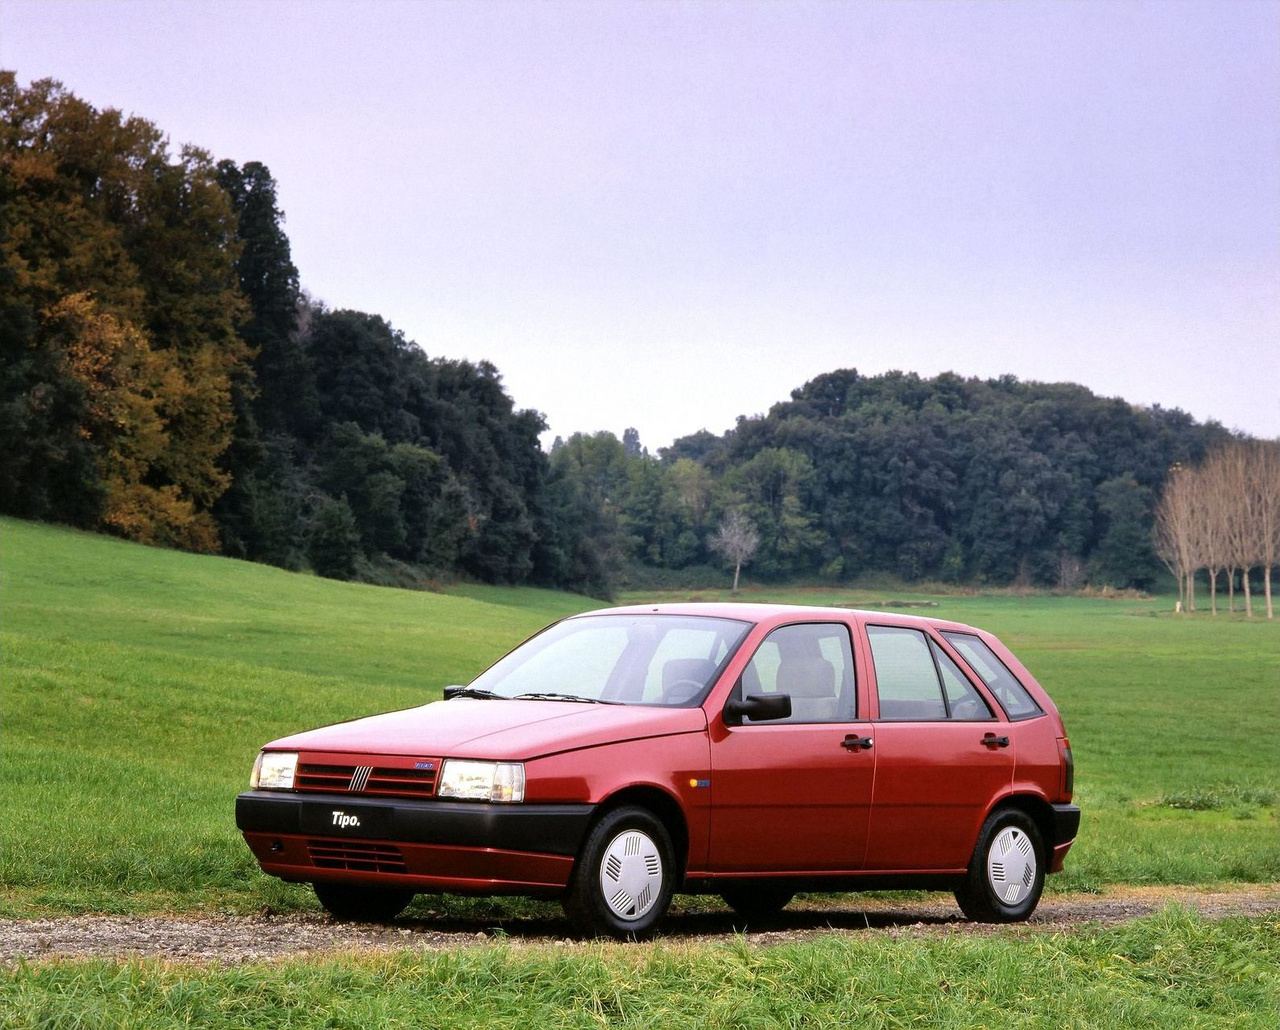 Az I.DE.A. Institute jelentőségét a Fiatnak végzett munkái bizonyítják. Az első 1981-ben a Fiat VSS (Vettura Sperimentale per Sonosysteme) prototípus volt, mely acél vázra ragasztott kompozit karosszériával kívánt súlyt és költséget csökkenteni. Egy Ritmo volt az alapja. 1988-ban jött a Tipo, már 75 százalékban galvanizált karosszériával. Az I.DE.A műve a Lancia Dedra, a Fiat Tempra, az Alfa Romeo 155, illetve a Nissan Terrano II is. A Lancia Delta második generációja szintén. Utolsó sorozatgyártott dizájnjuk a 2008-as Tata Nano lett.